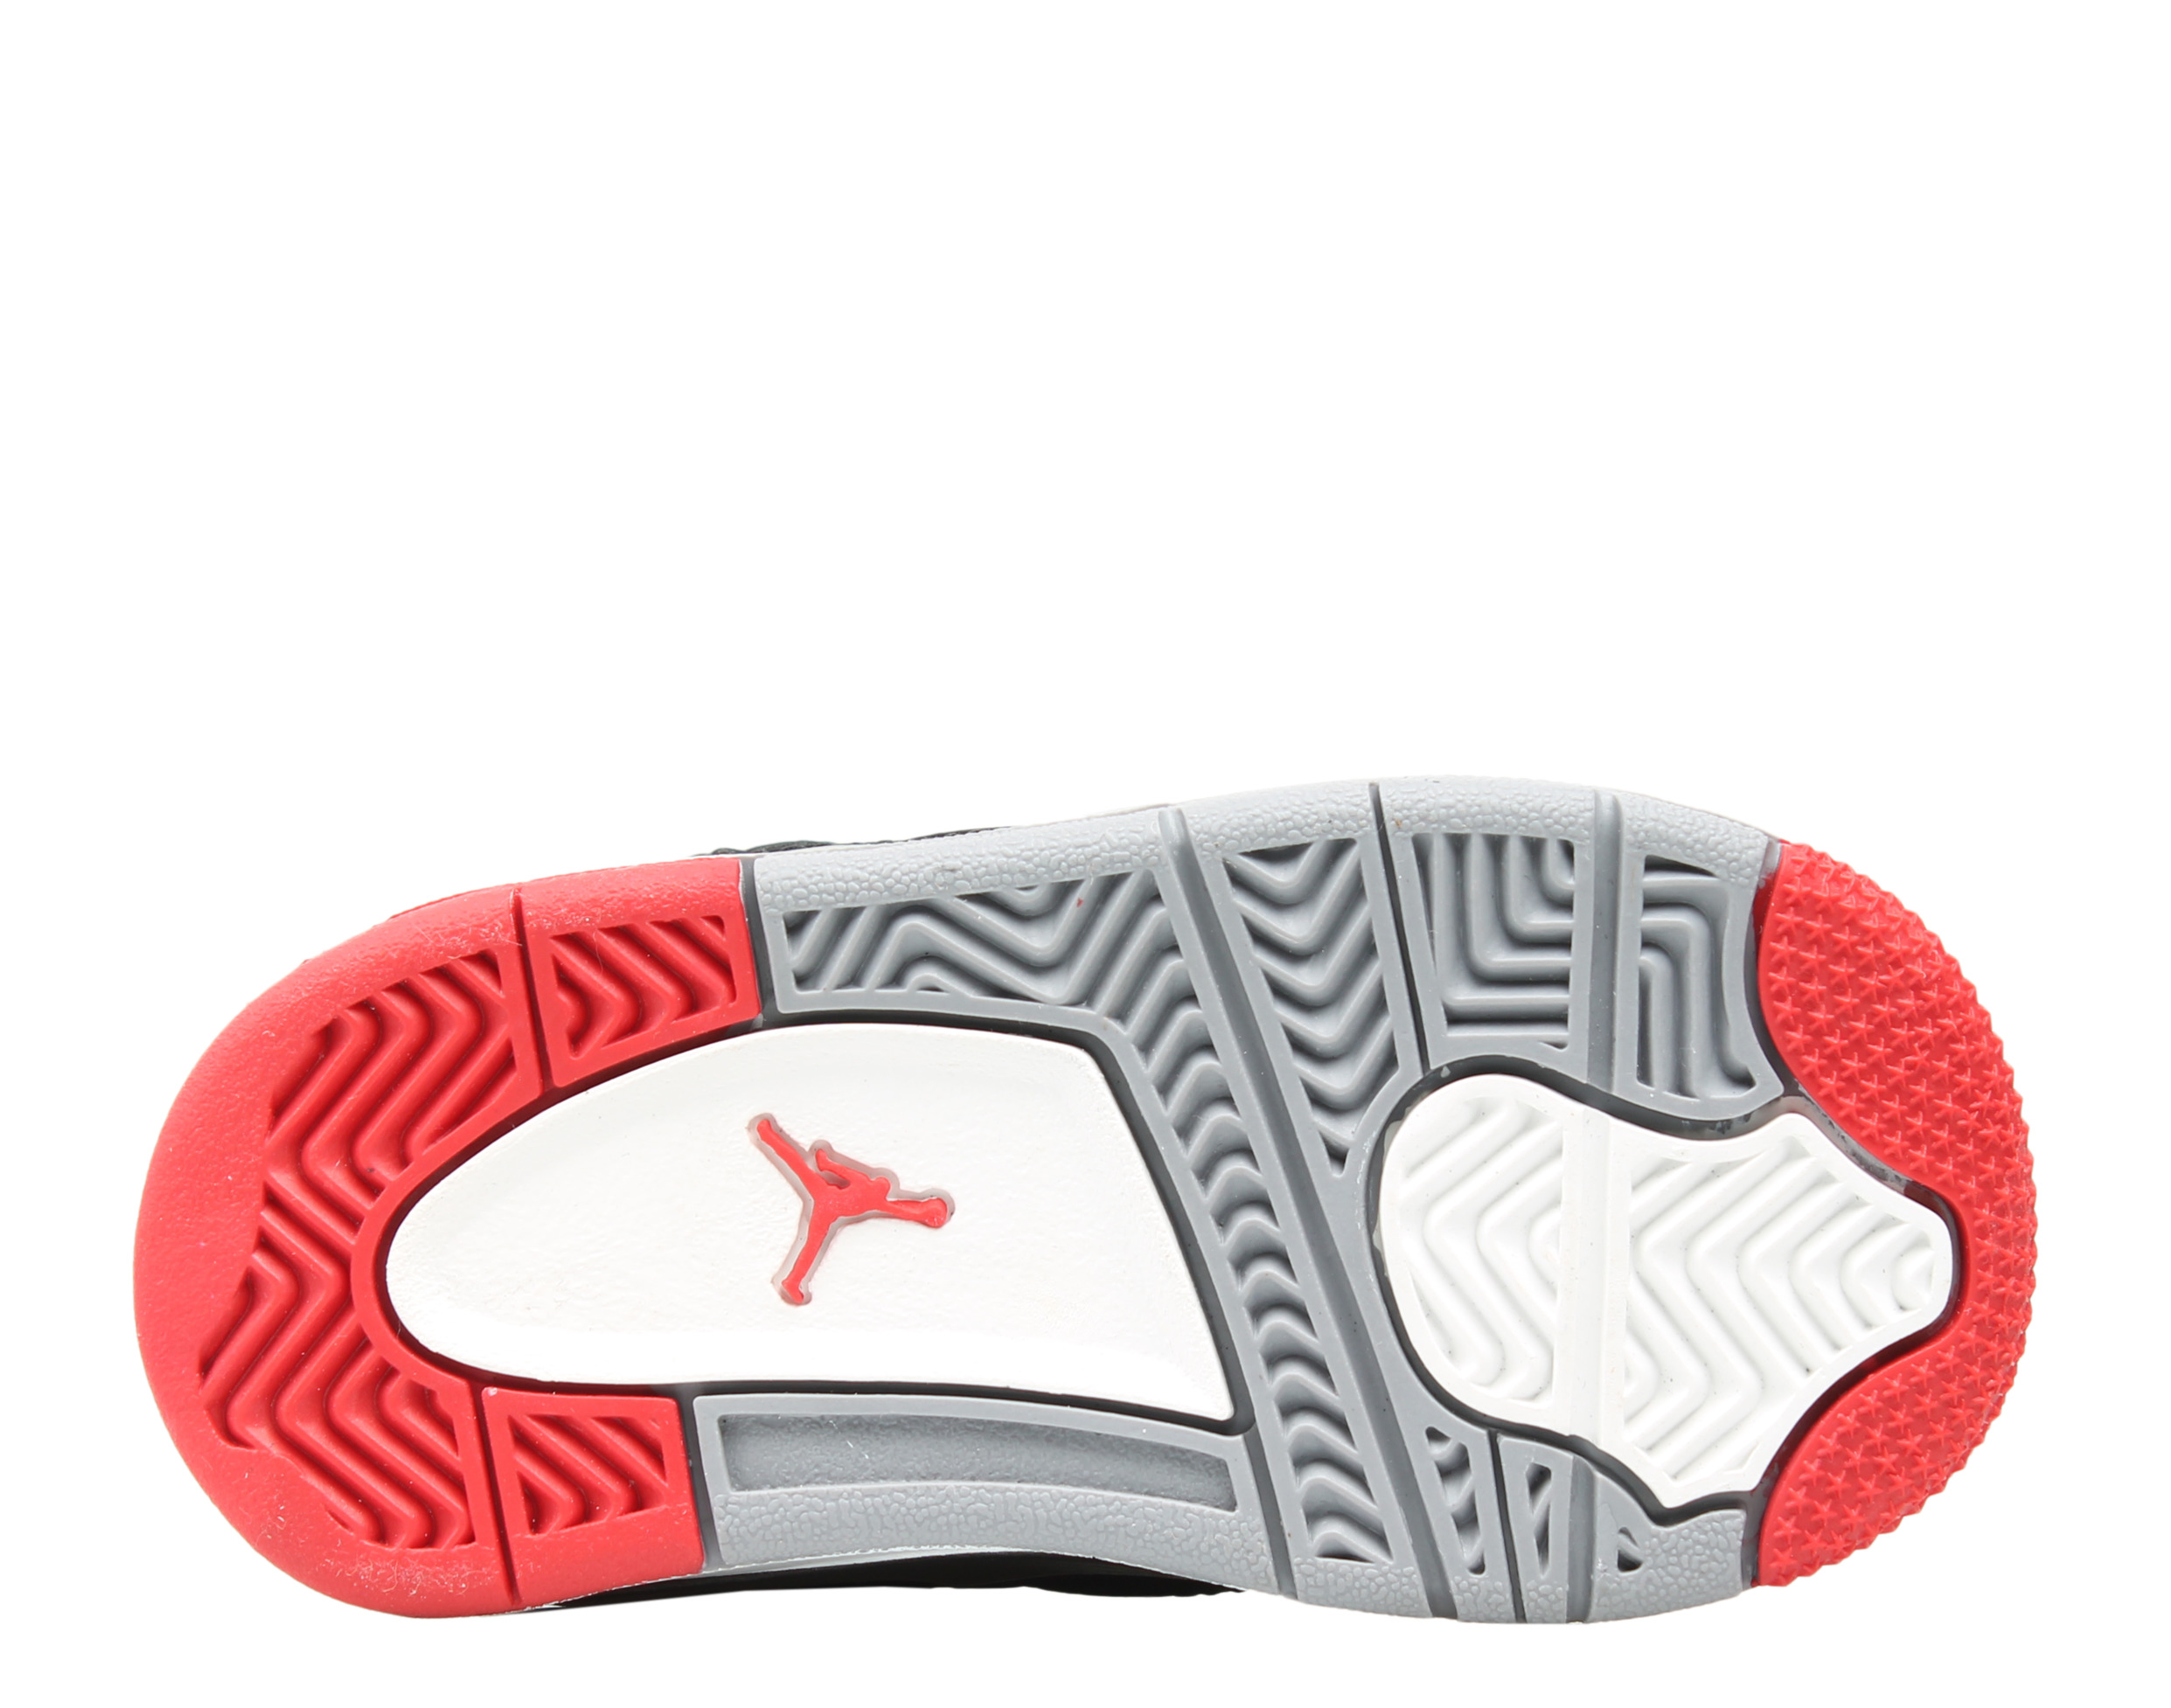 Nike Air Jordan 4 Retro (TD) Toddler Basketball Shoes Size 7 - image 5 of 6